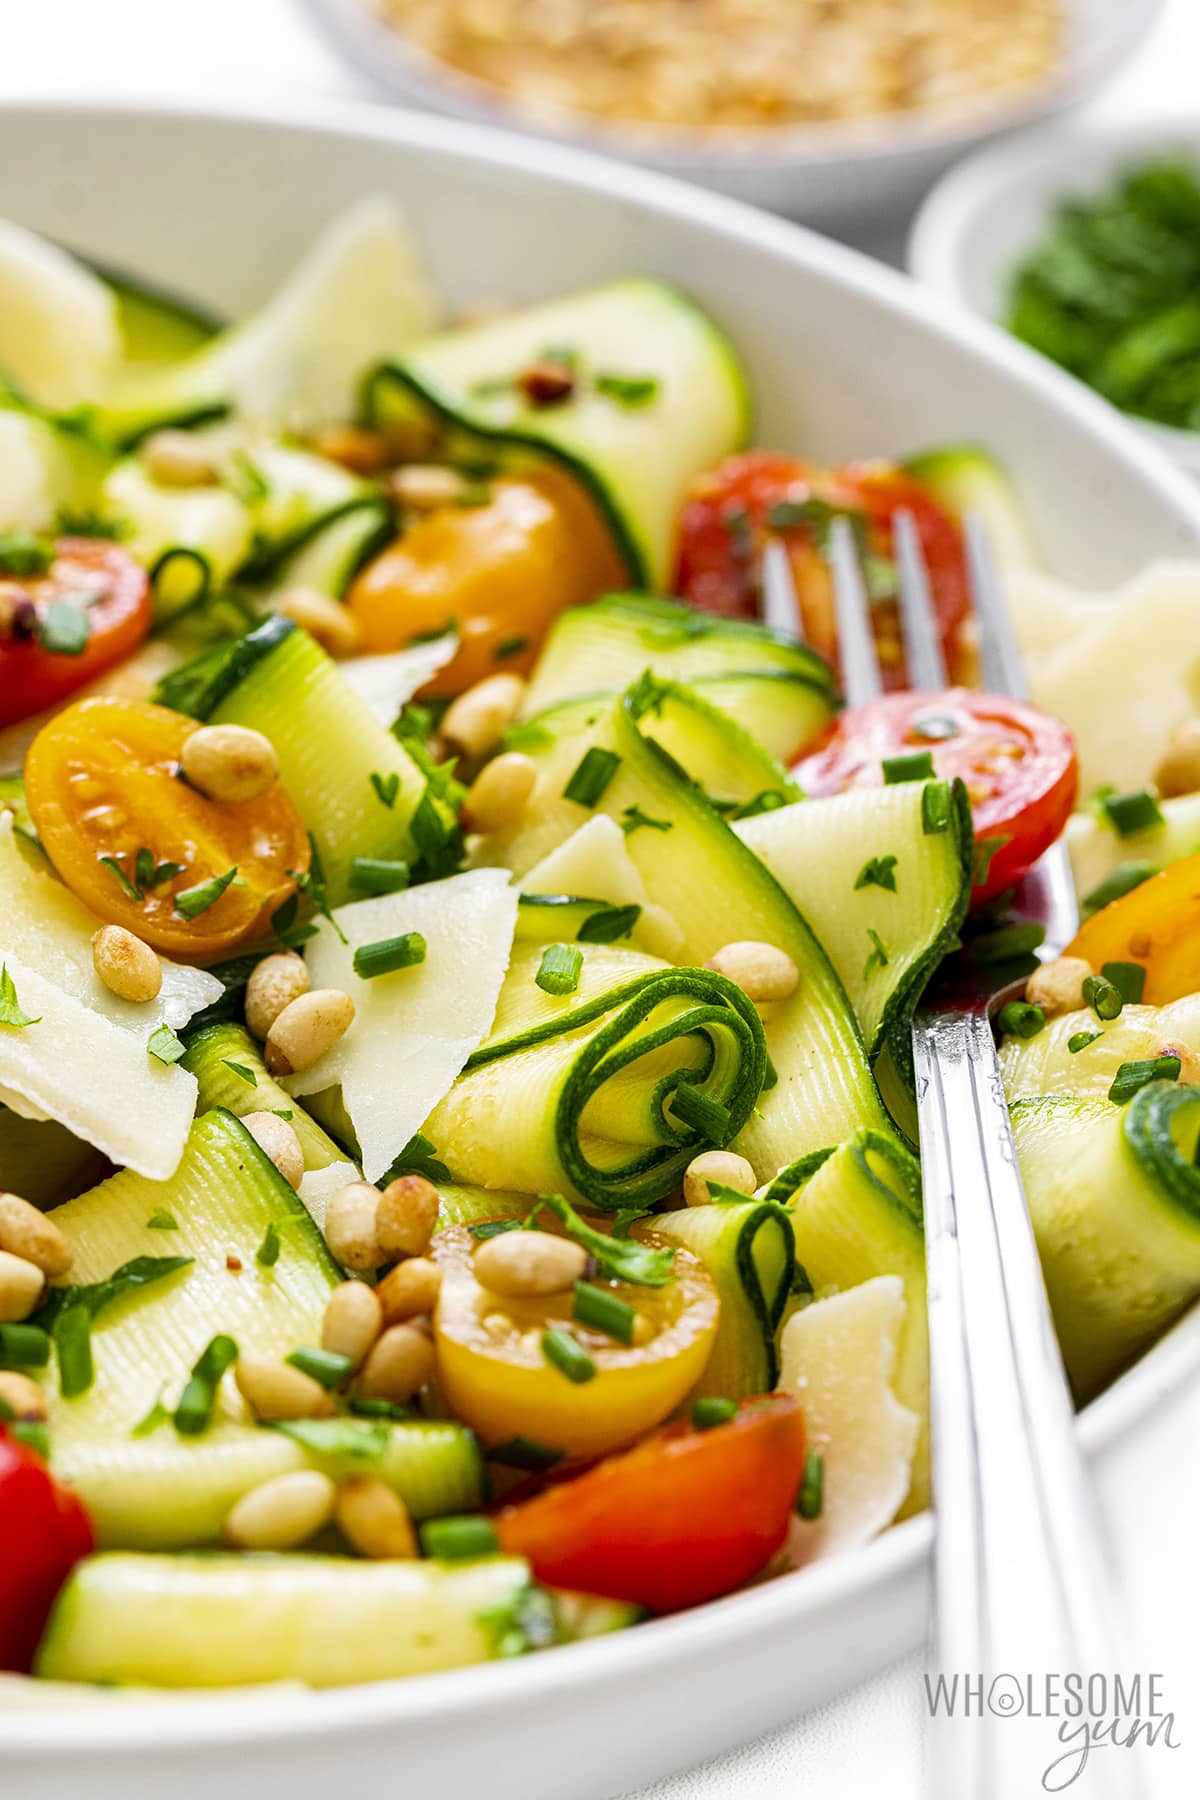 Zucchini salad recipe up close.